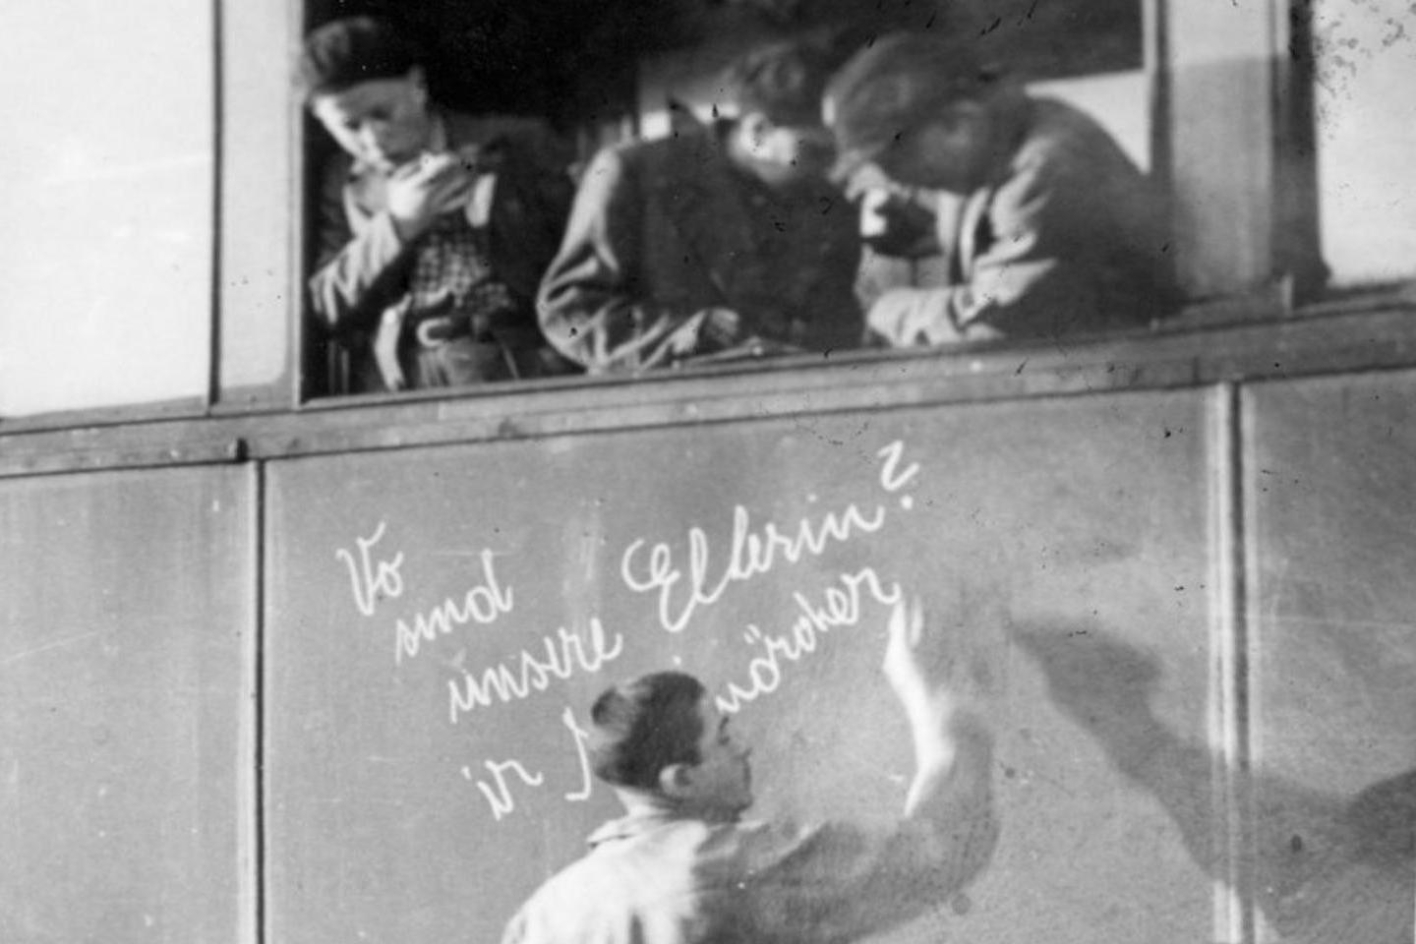 Befreite Kinder und jugendliche Häftlinge des Konzentrationslagers Buchenwald auf dem Weimarer Hauptbahnhof im Waggon eines Zuges nach Ecoui. Josek Dziubak bringt mit Kreide auf der Waggonwand die Inschrift an "Wo sind unsere Eltern? Ihr Mörder".